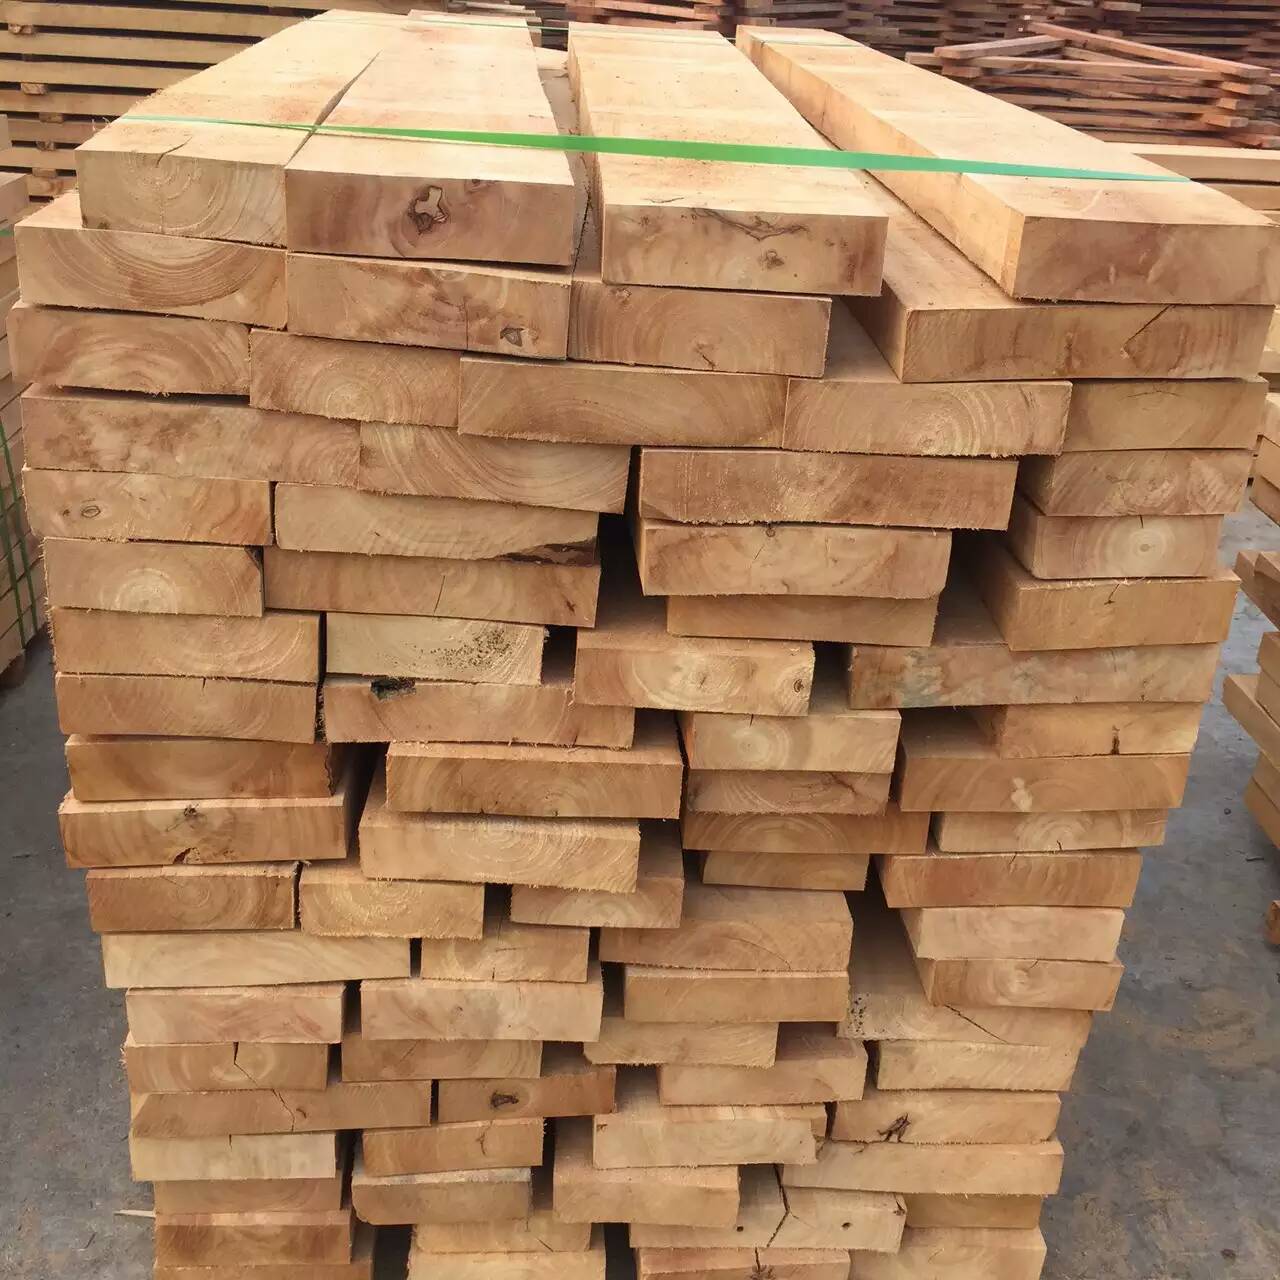 锦州哪里有橡胶木批发 橡胶木自然板 海南橡胶木厂家 橡胶木价格